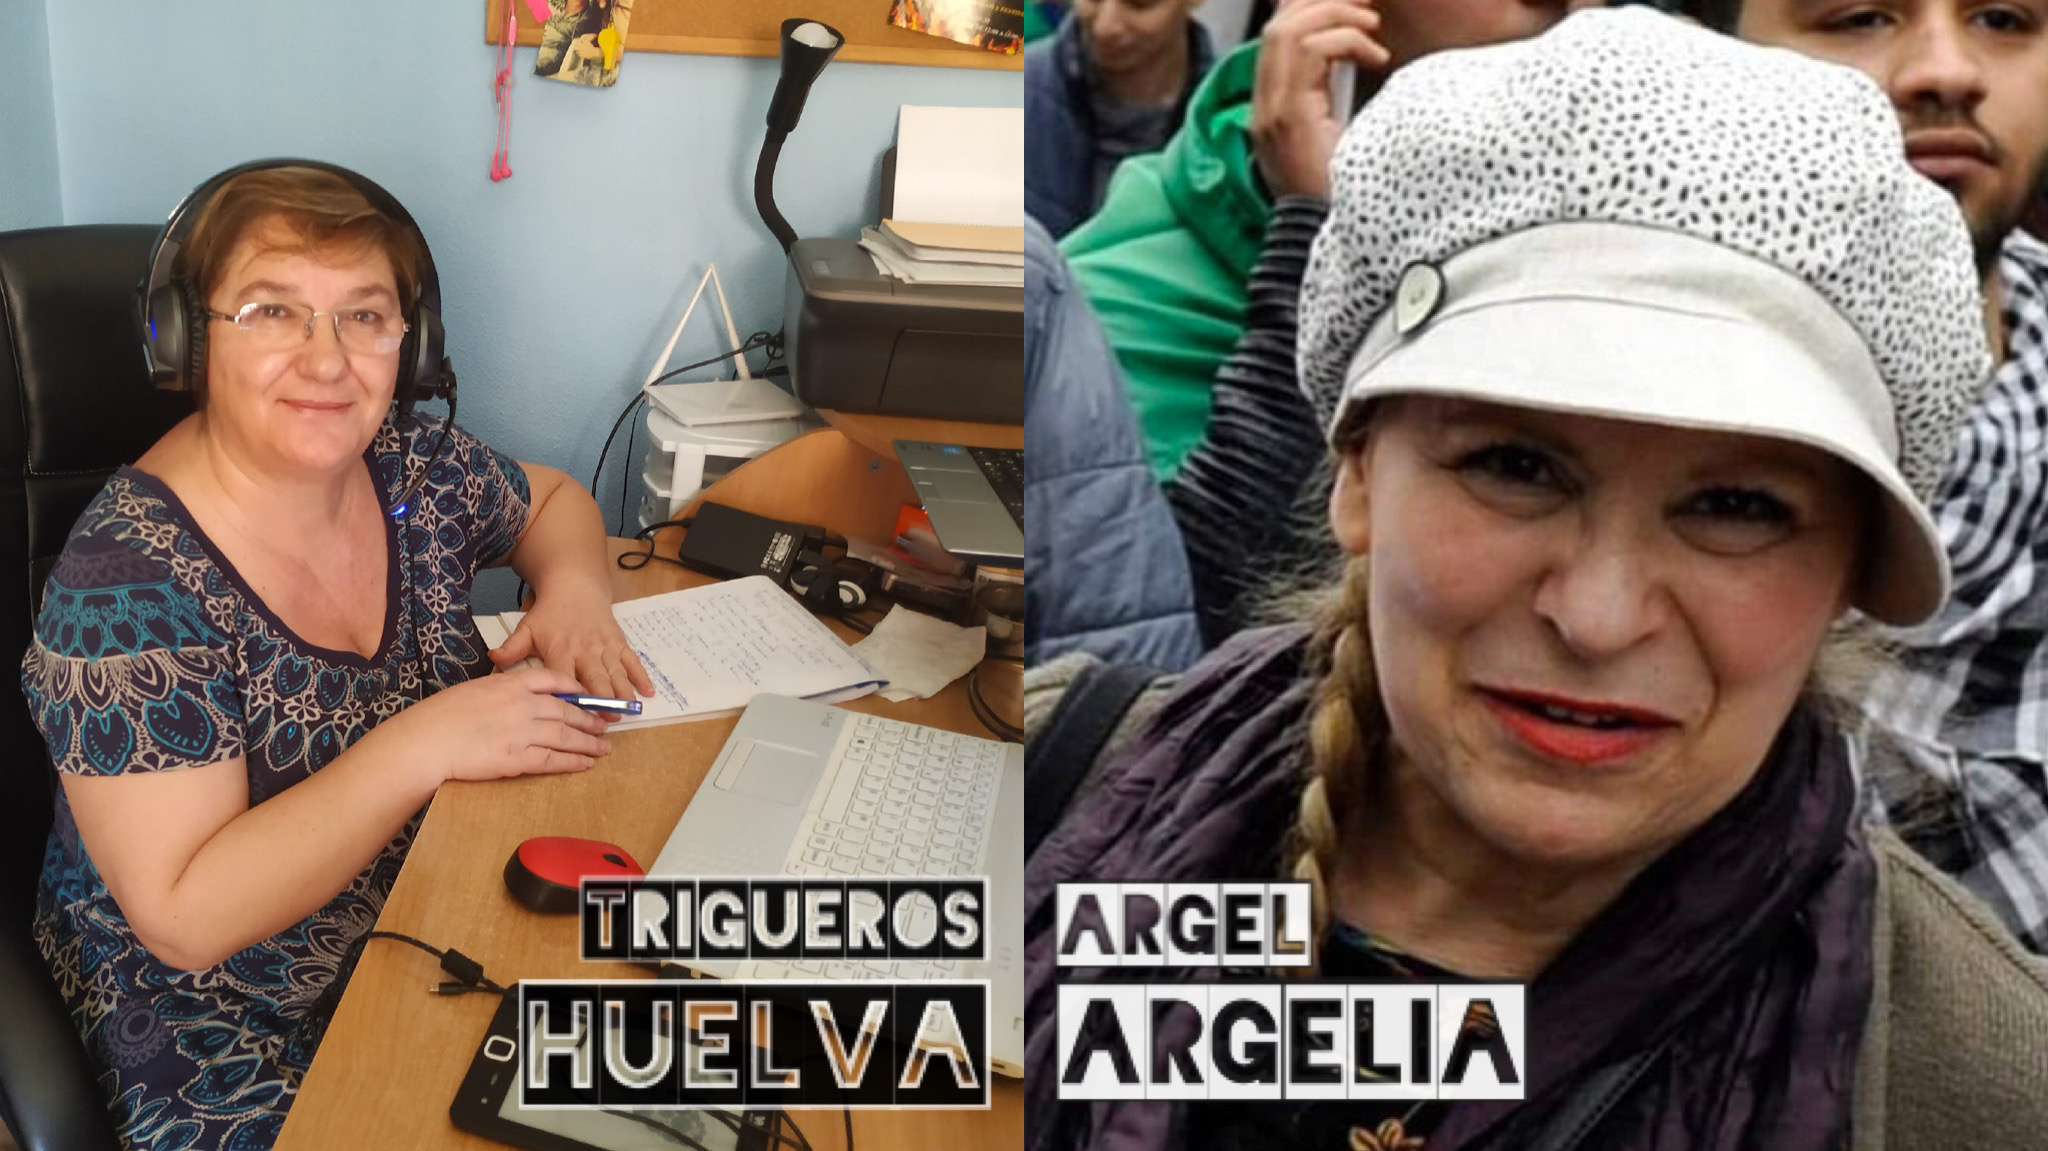 6. Diálogo Argelia – Huelva, con Malika Boussouf y Clara Aurrecoechea